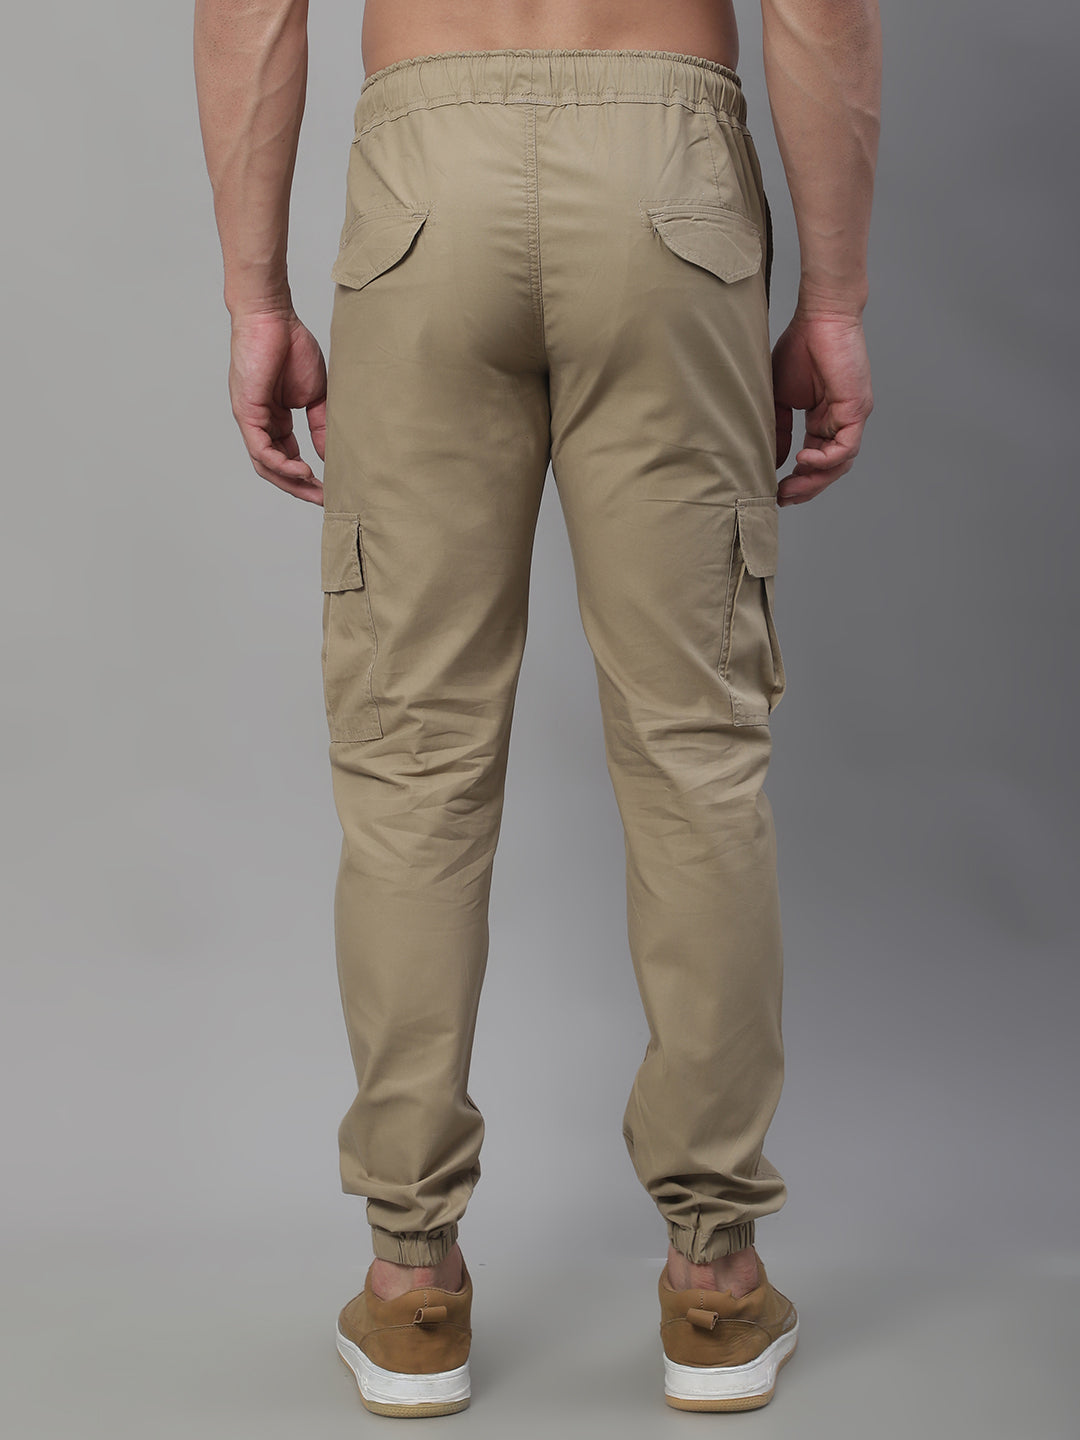 Jainish Men's Casual Cotton Solid Cargo Pants - Beige - Distacart